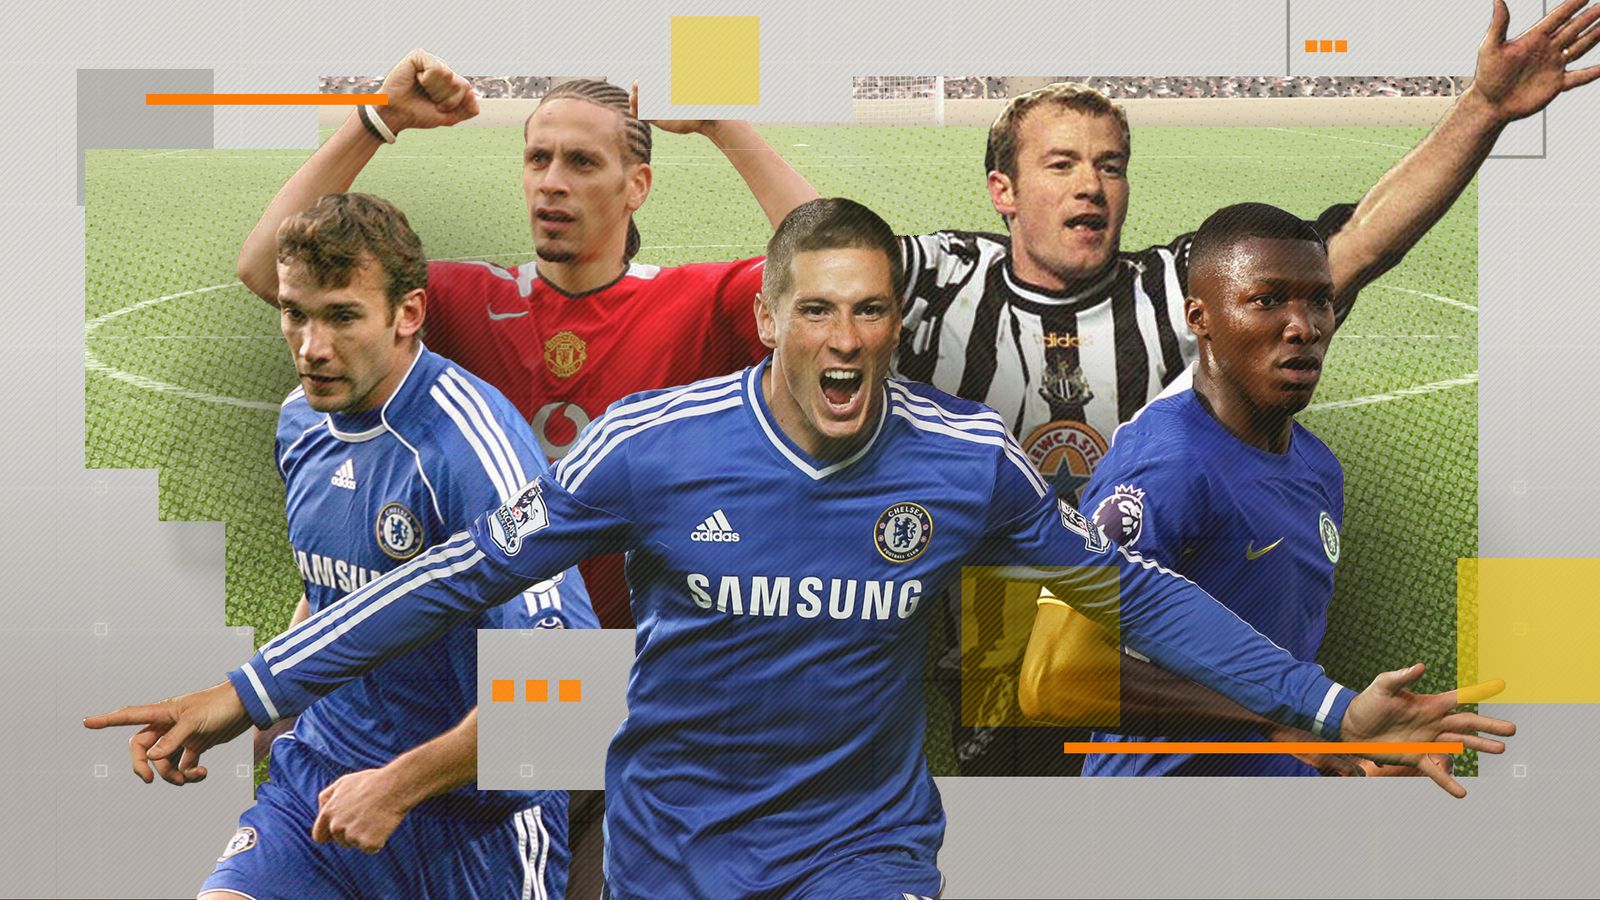 David LEE - Premiership Appearances - Chelsea FC